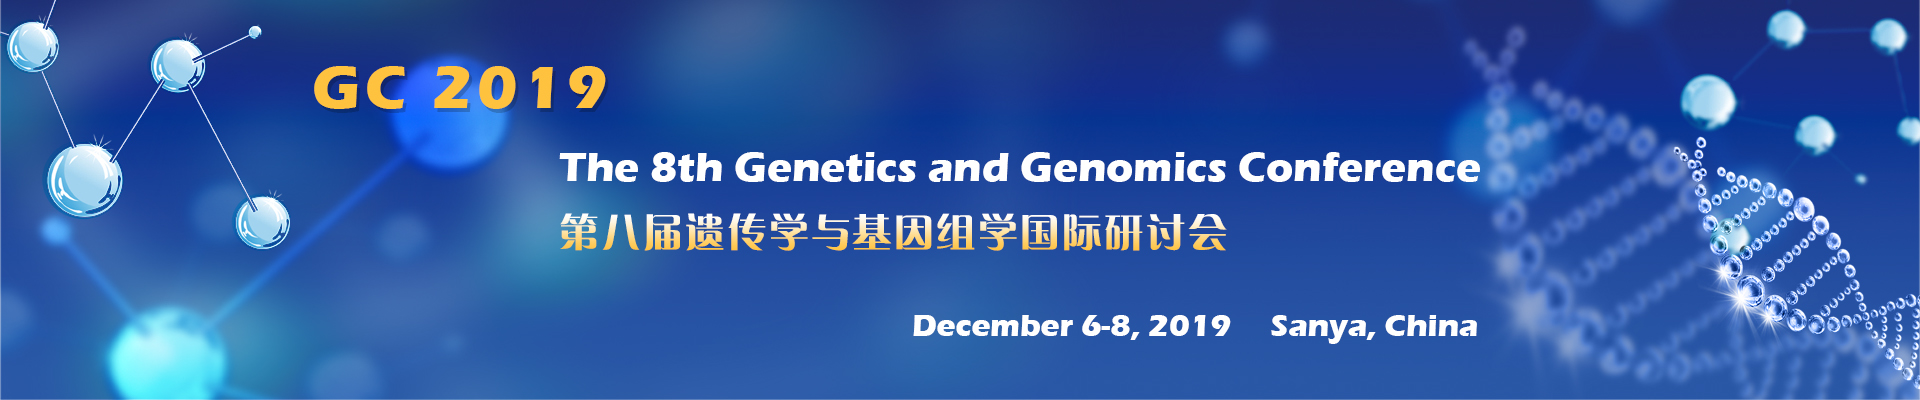 The 8th Genetics and Genomics Conference (GC 2019), Sanya, Hainan, China